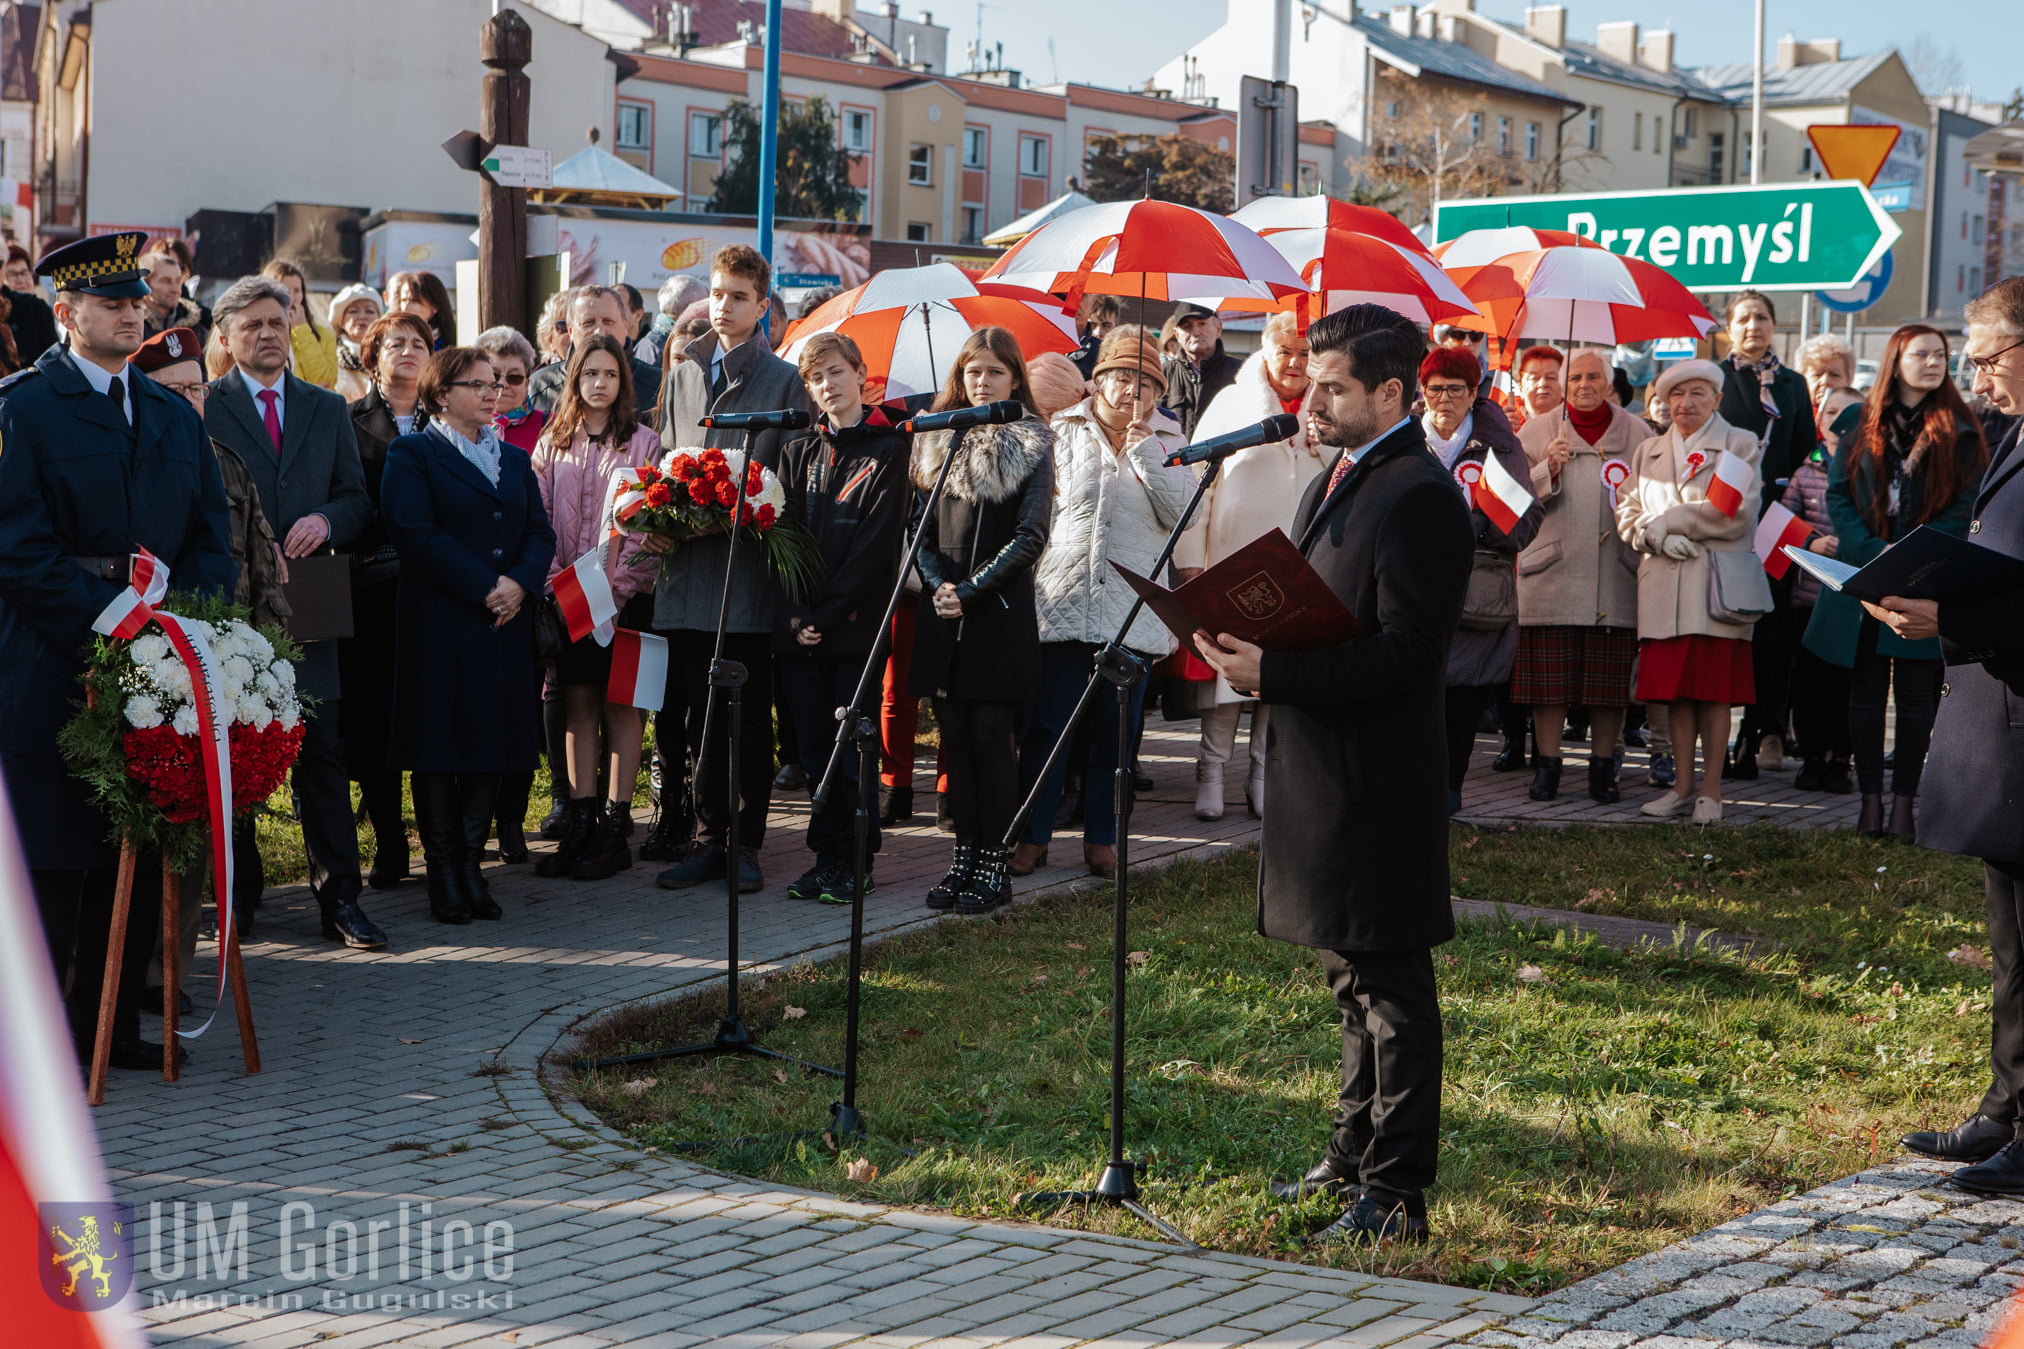 Zastępca Burmistrza Miasta Gorlice wygłaszający okolicznościowe przemówienie